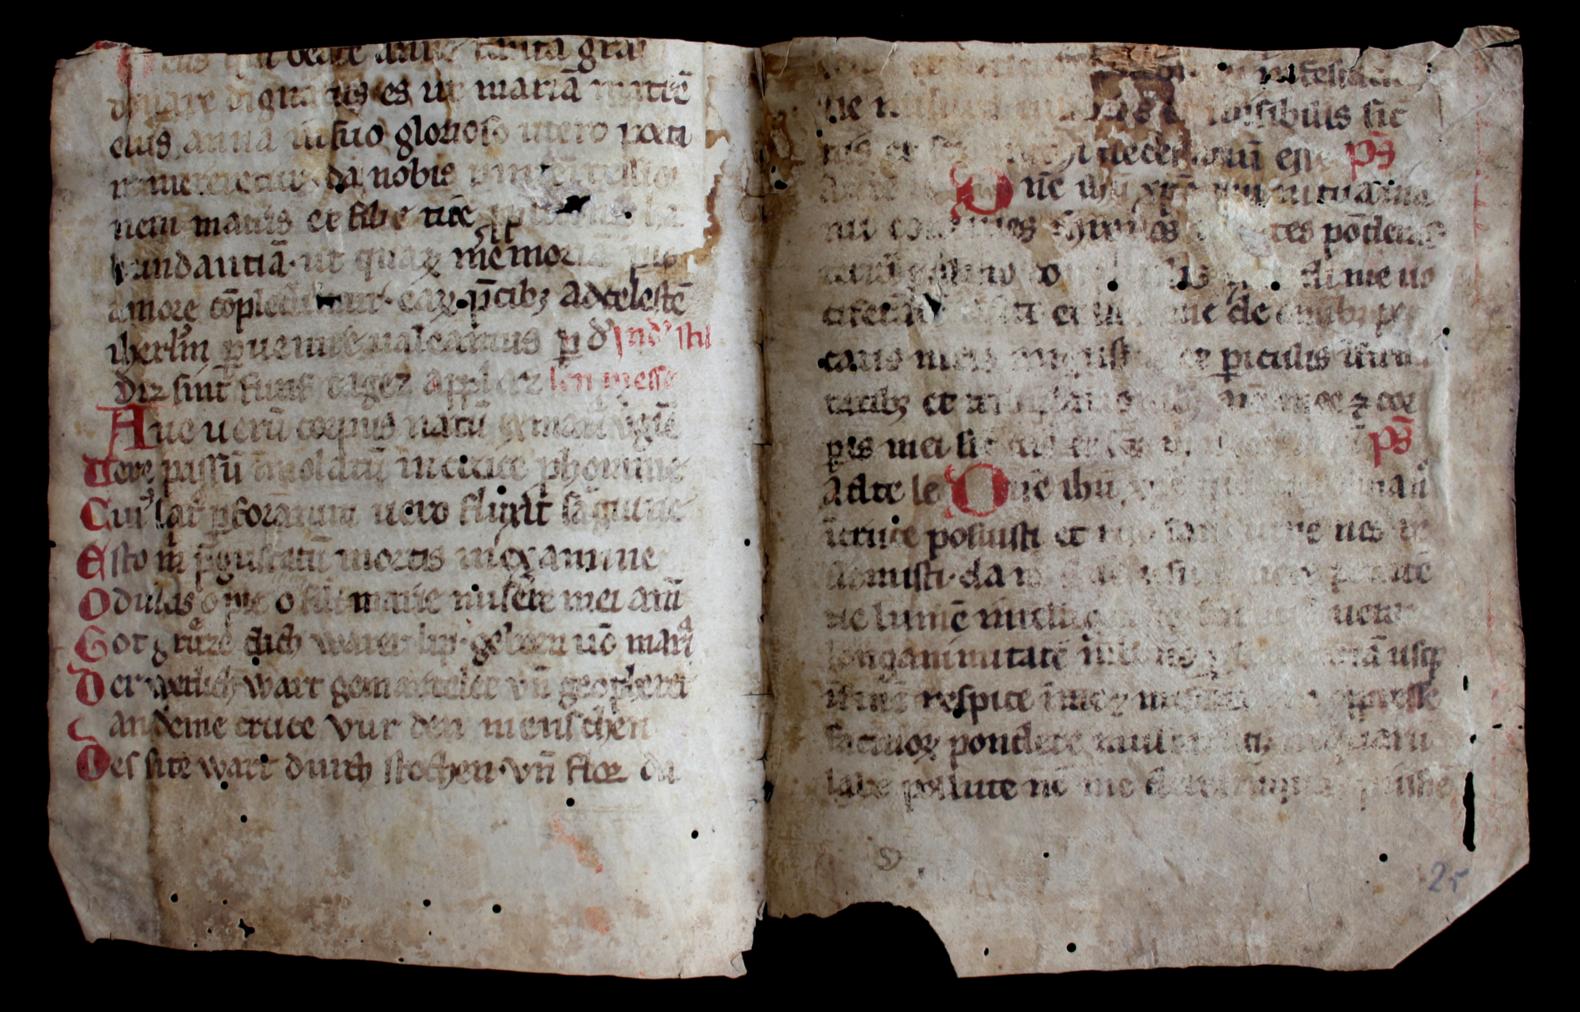 Das in der Martinus-Bibliothek entdeckte handschriftliche Pergamentfragment aus dem 13. Jahrhundert enthält den lateinischen und den deutschen, wohl rheinfränkischen Text des „Ave verum“. (c) Martinus-Bibliothek